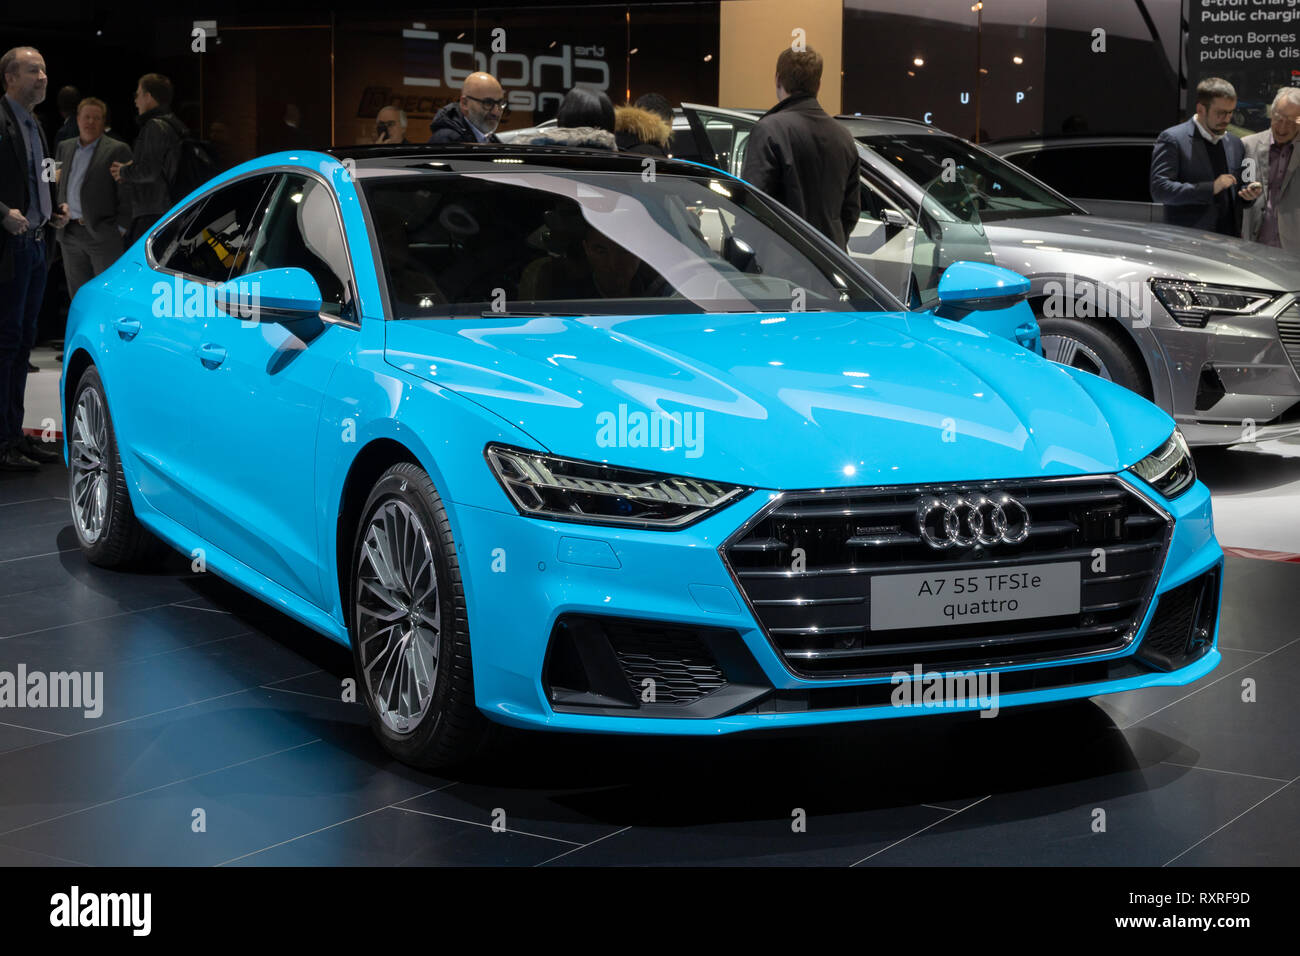 Genf, Schweiz - 6. MÄRZ 2019: Audi A7 Quattro Auto auf dem 89. Internationalen Automobilsalon in Genf präsentiert. Stockfoto